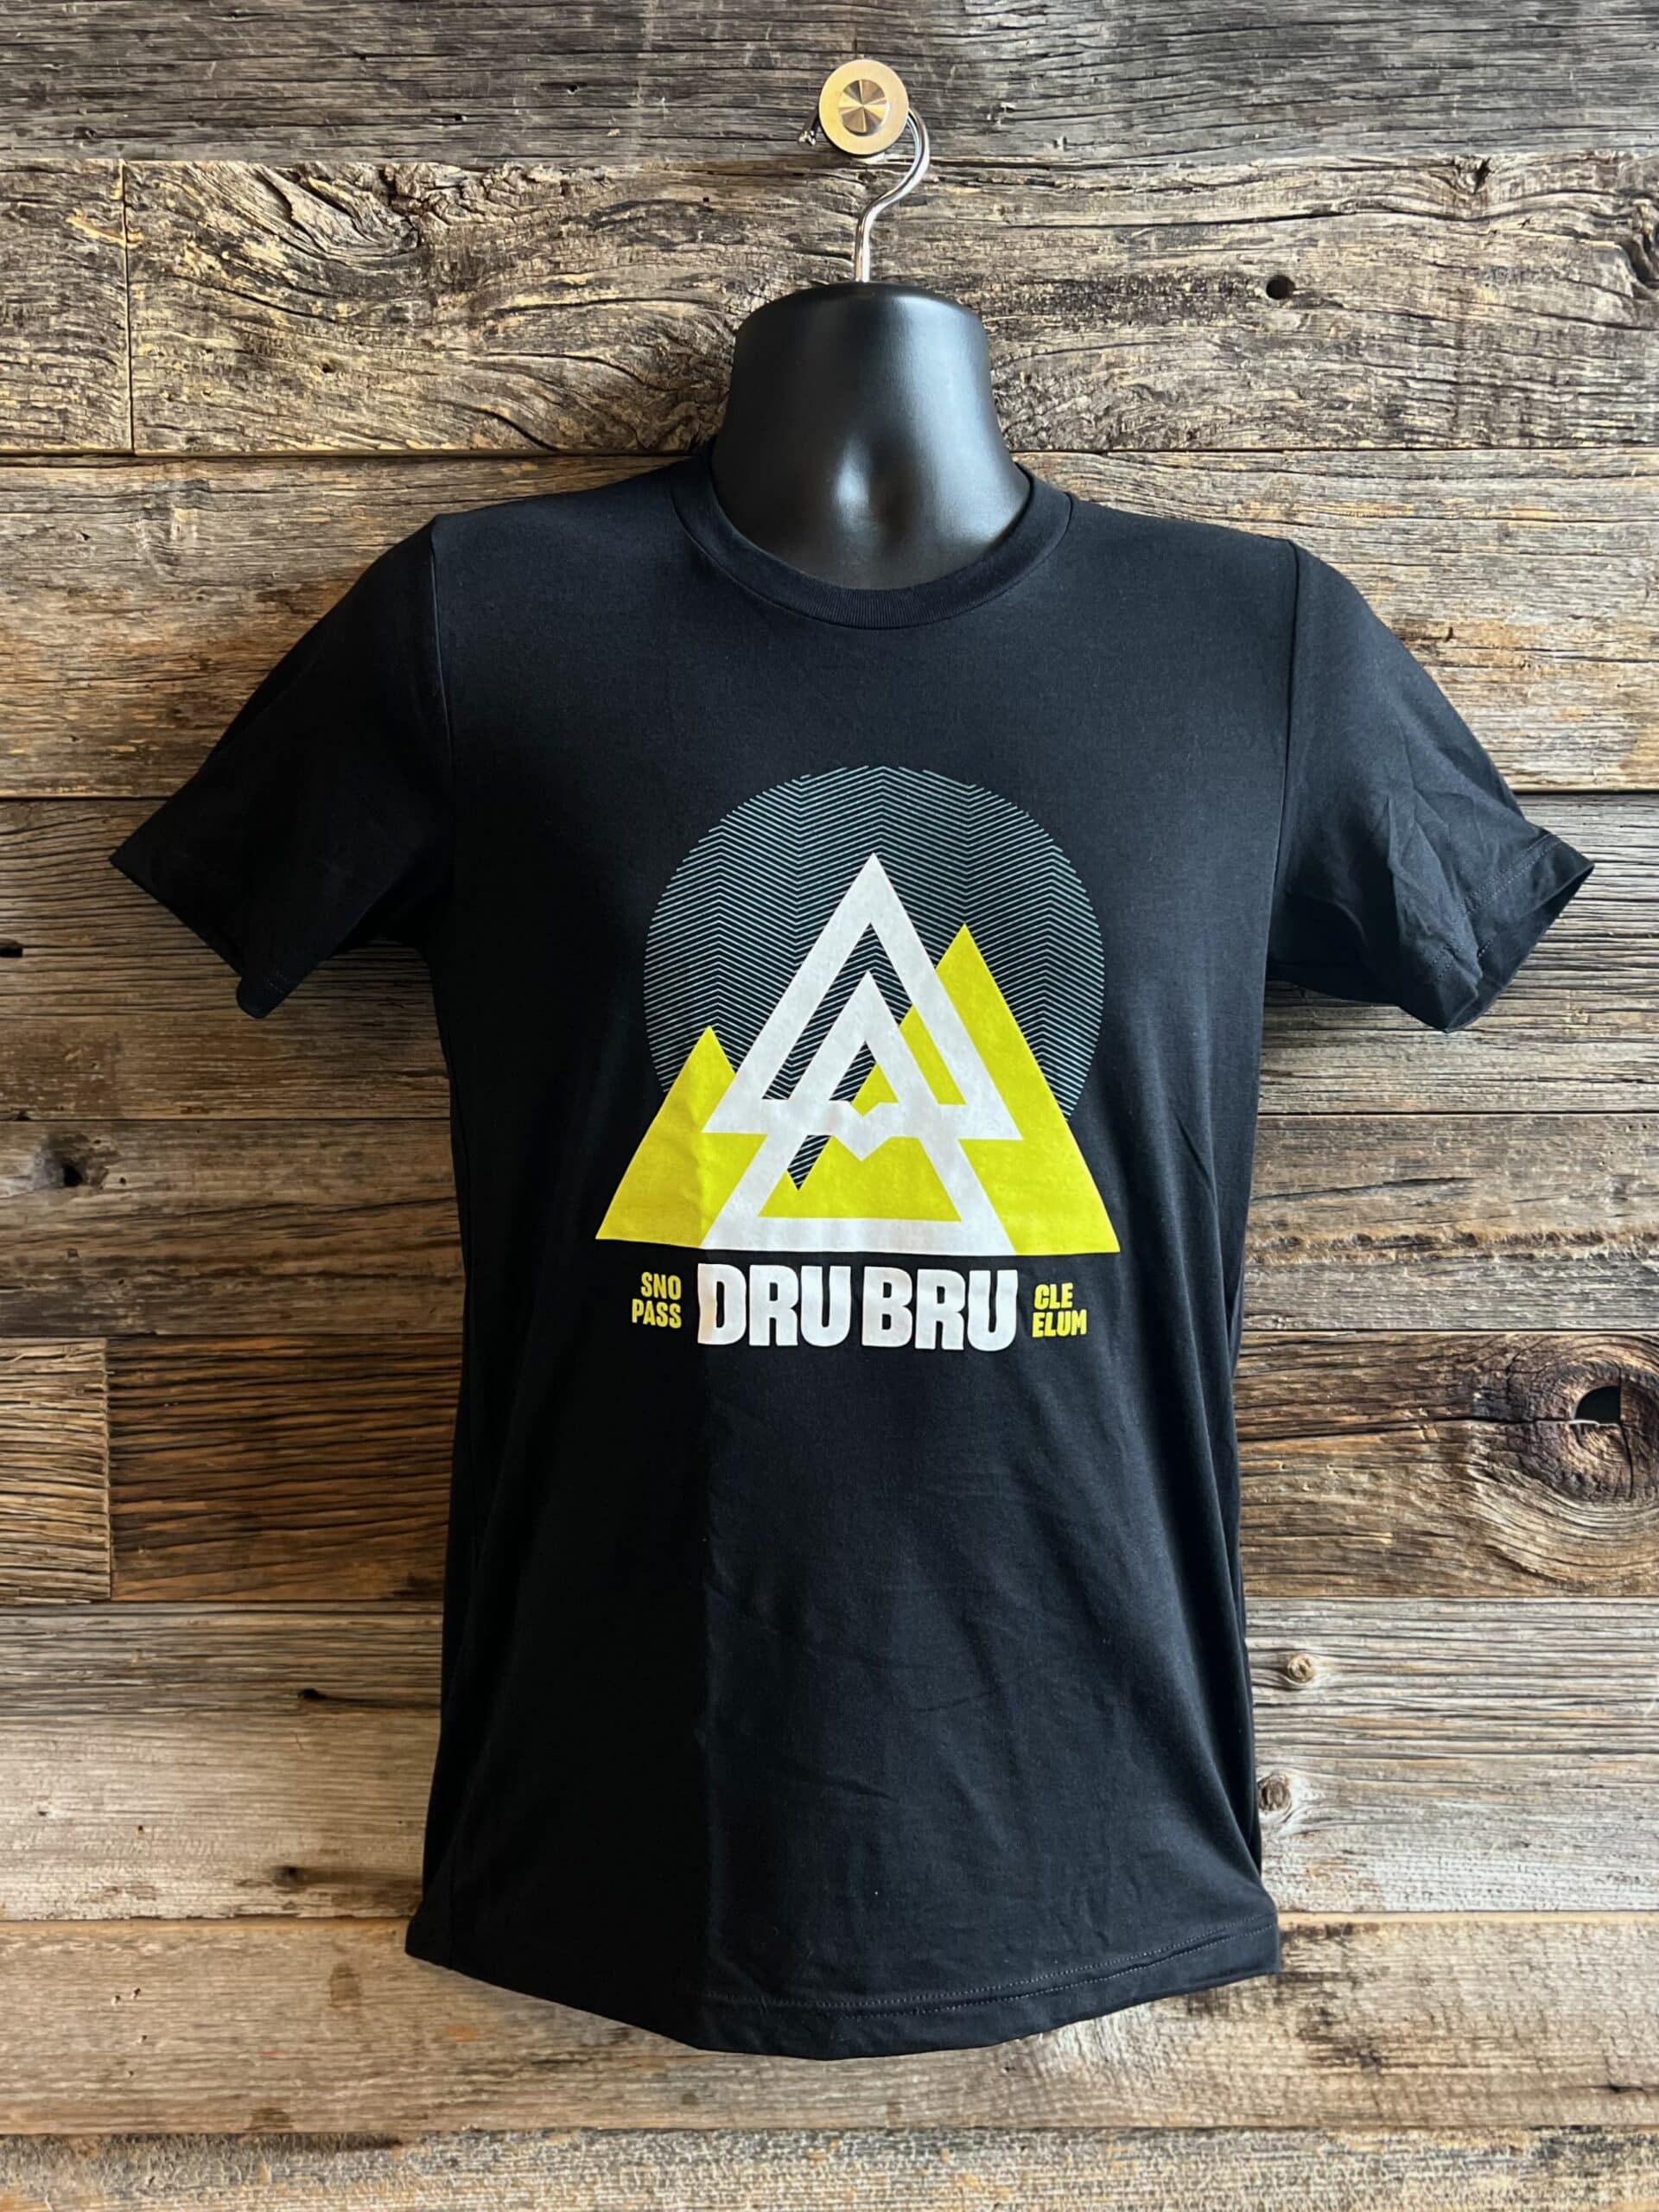 DRU BRU - Two Location Shirt - Dru Bru